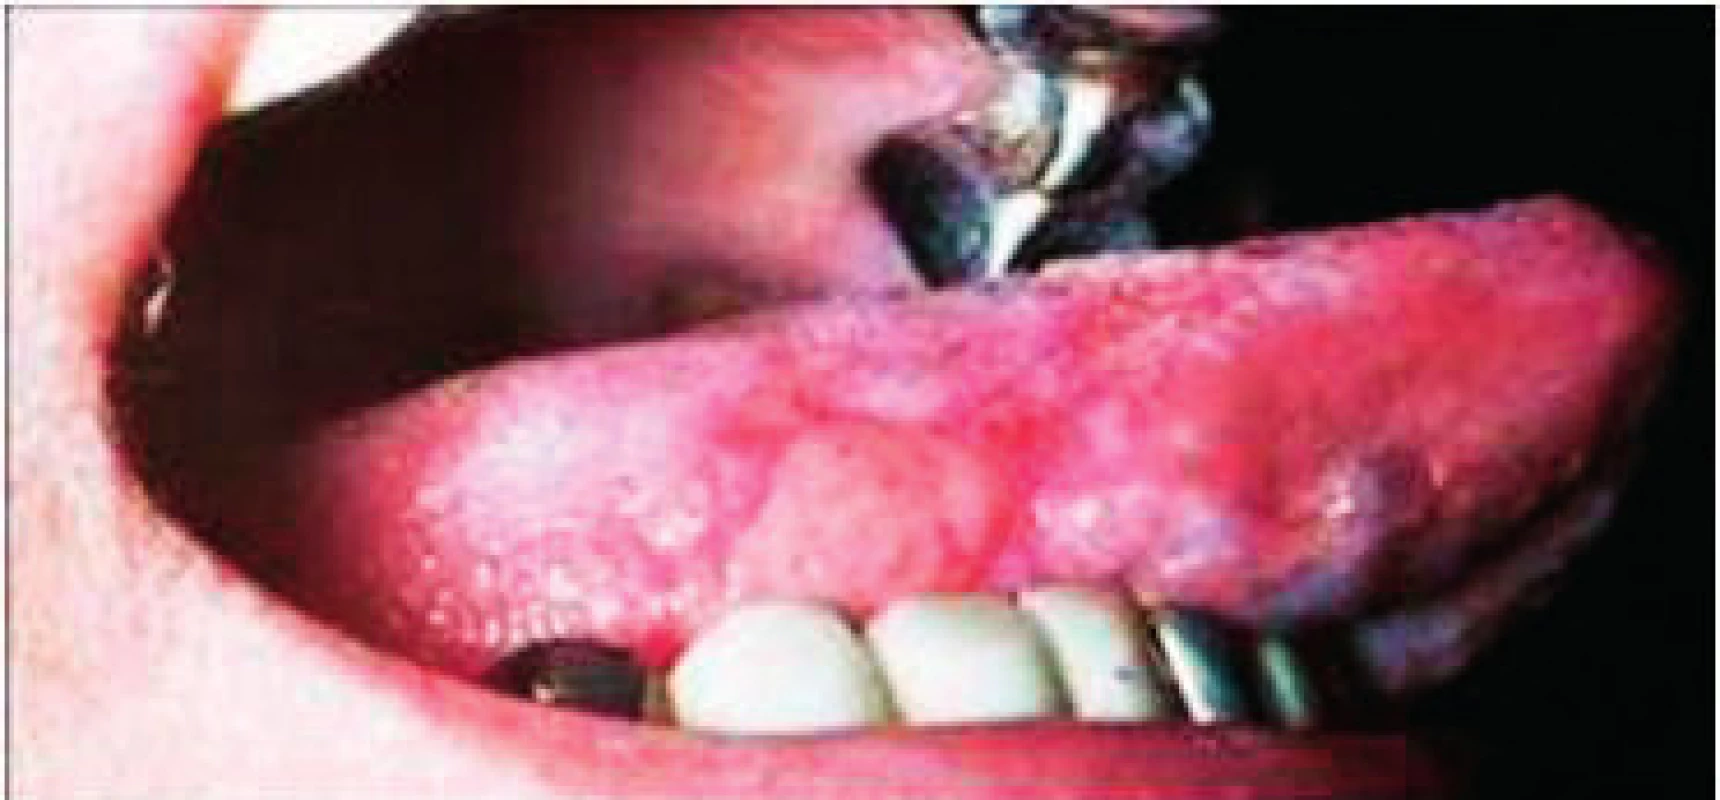 Glositis areata migrans. Prítomný je patologicky zmnožený povlak s erozívnymi políčkami. Stav je pri infekcii &lt;i&gt;Helikobakter pylori&lt;/i&gt;